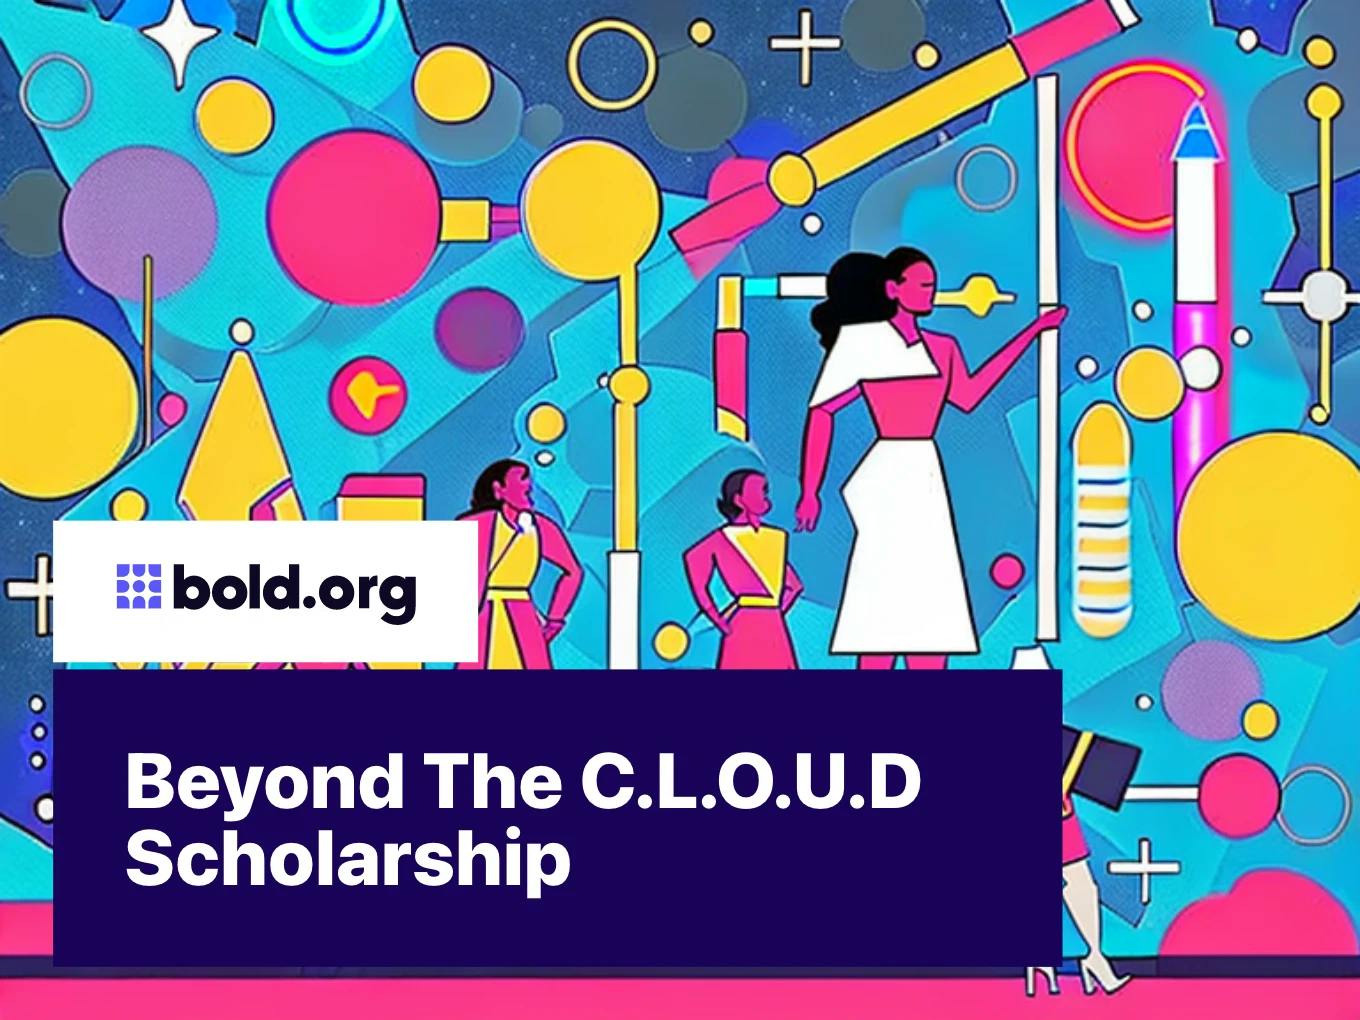 Beyond The C.L.O.U.D Scholarship